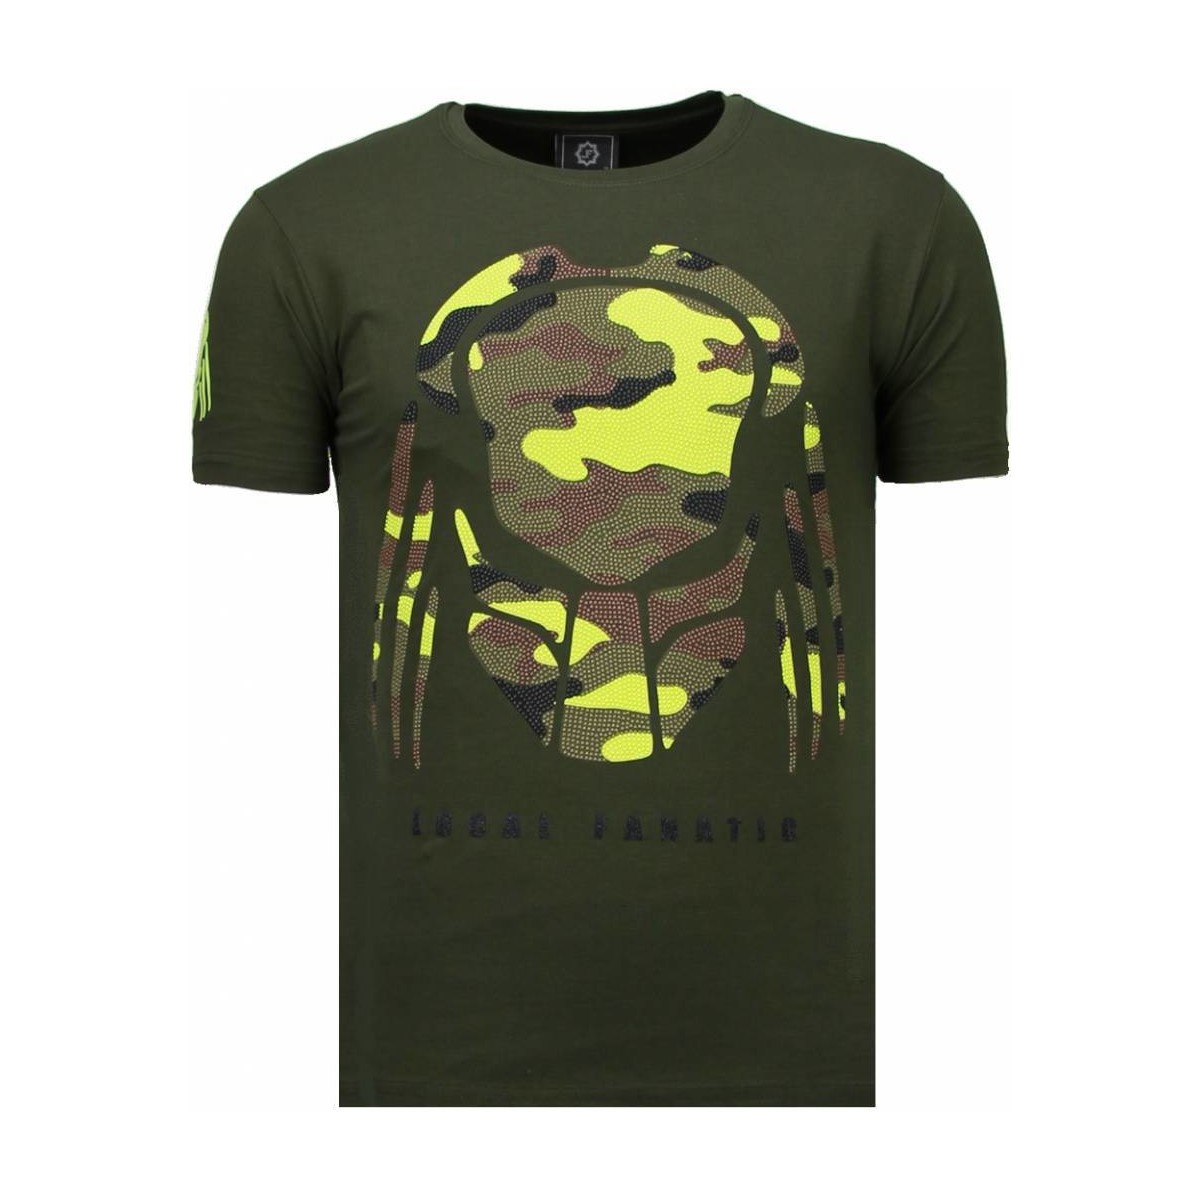 tekstylia Męskie T-shirty z krótkim rękawem Local Fanatic 44532032 Zielony